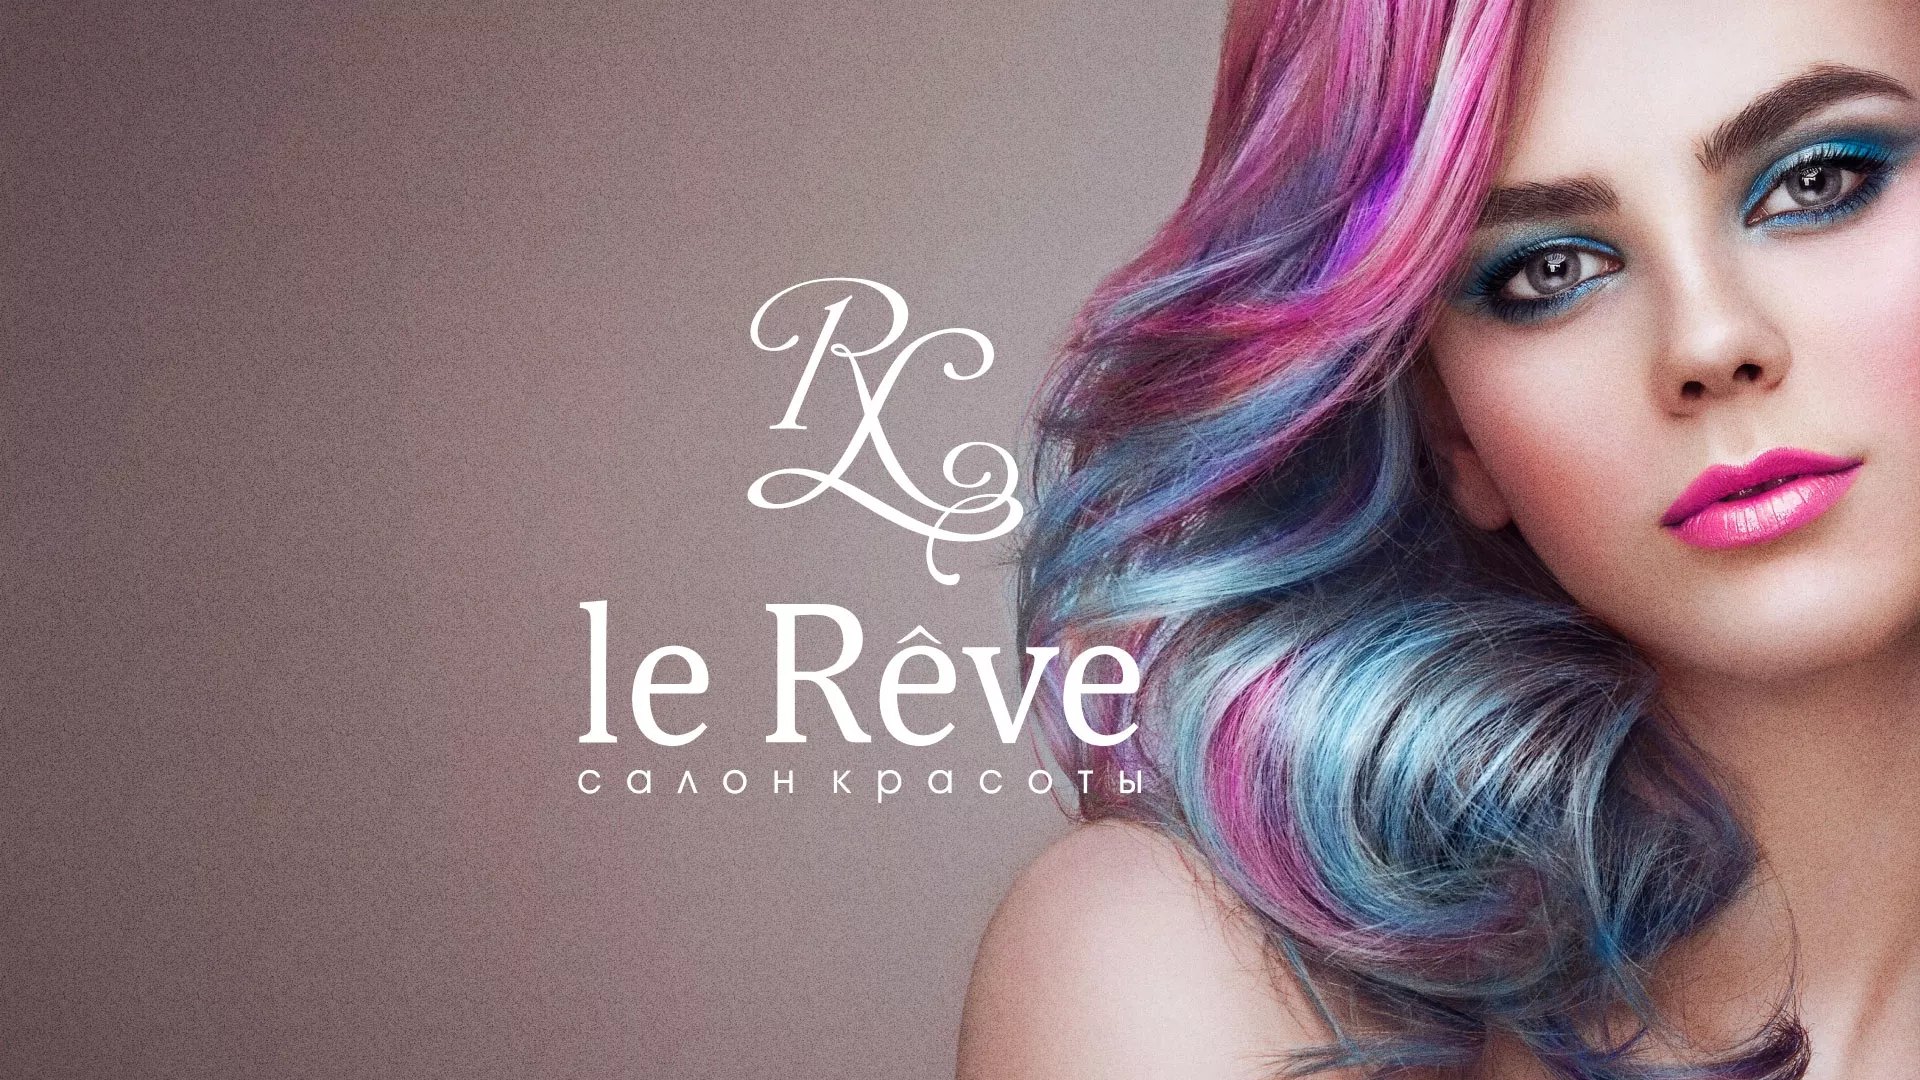 Создание сайта для салона красоты «Le Reve» в Щучье